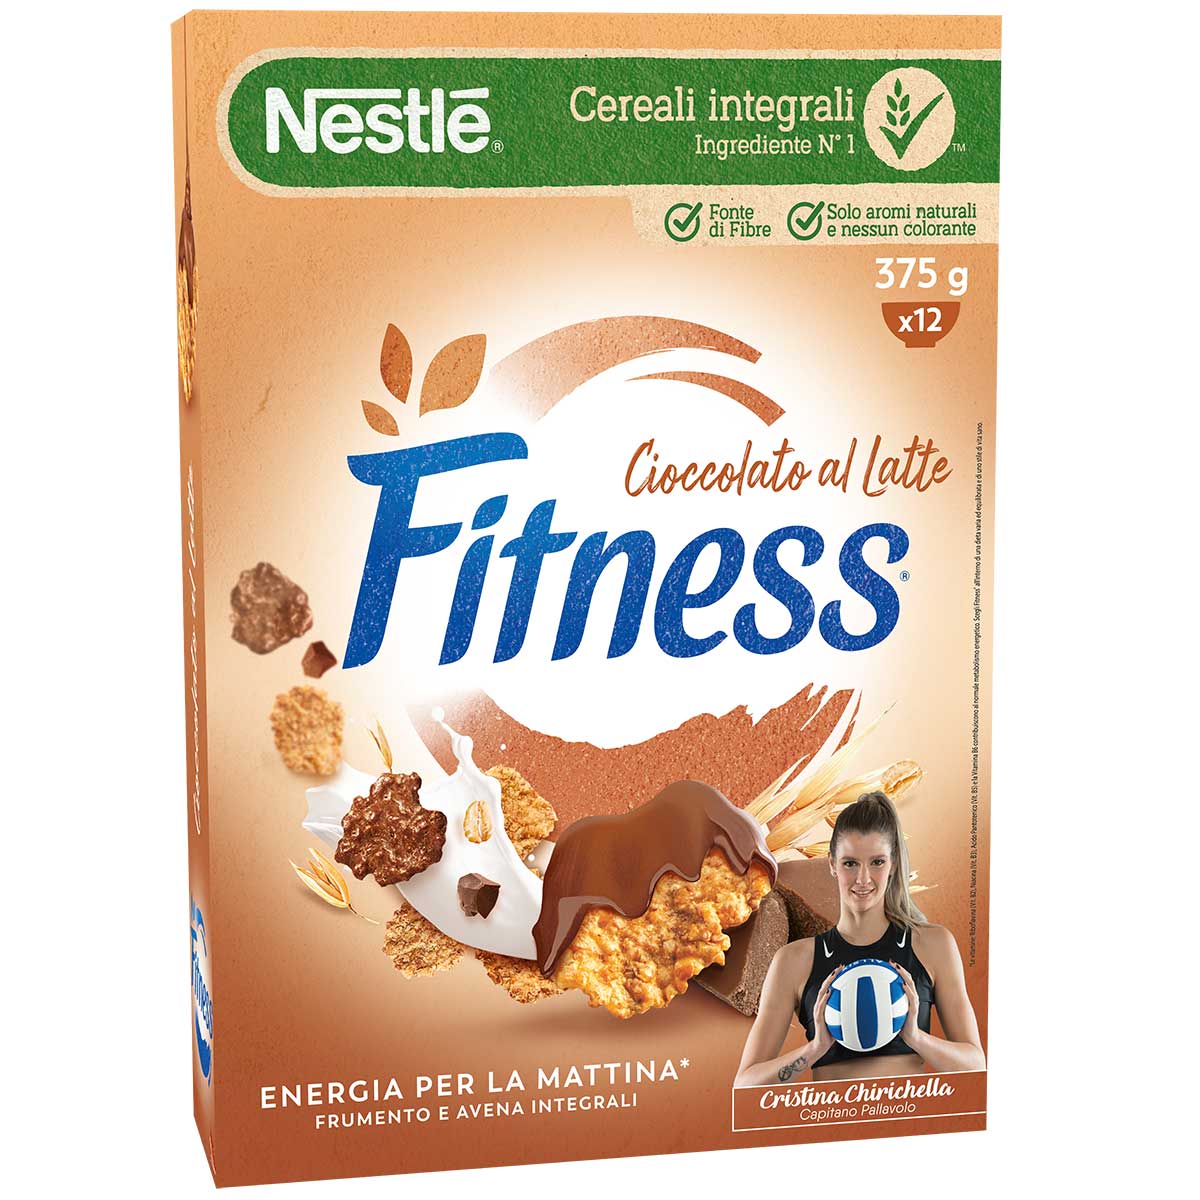 Fitness® CIOCCOLATO AL LATTE Cereali con frumento e avena integrali e fiocchi ricoperti al cioccolato al latte 375g